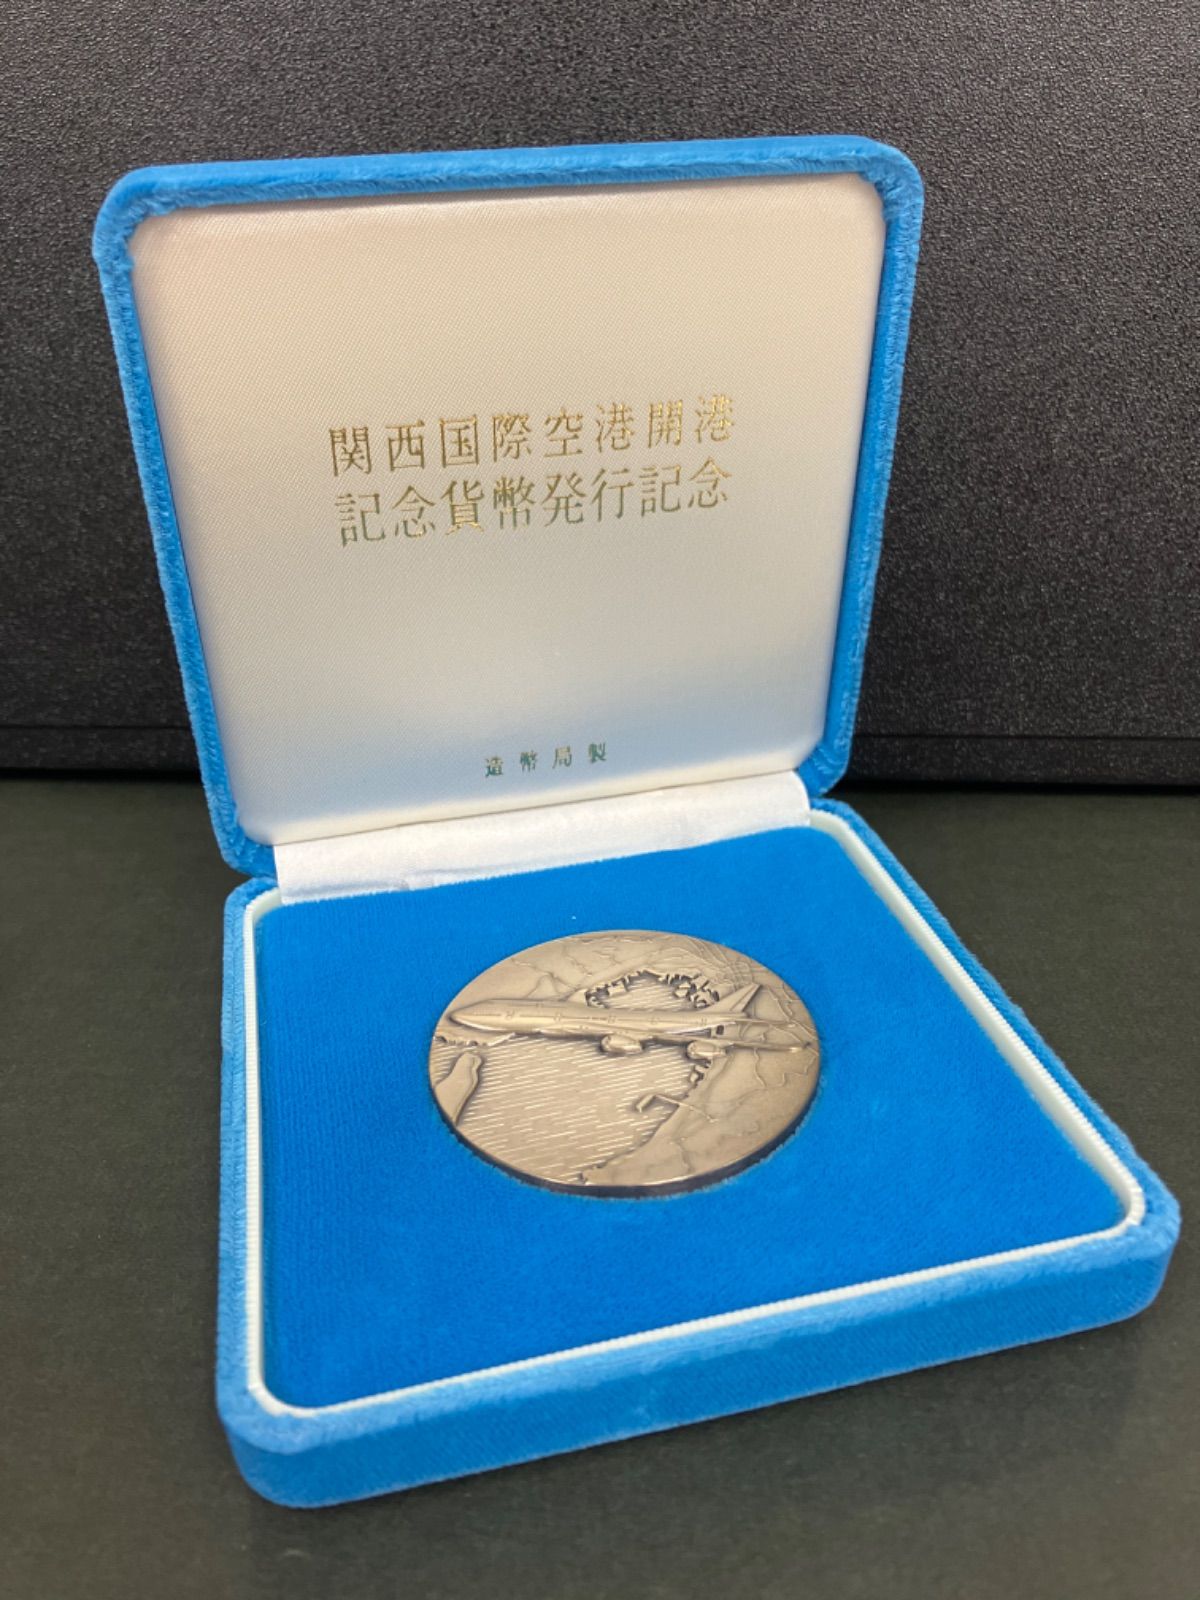 関西国際空港開港記念貨幣 発行記念メダル 純銀 120g 造幣局 